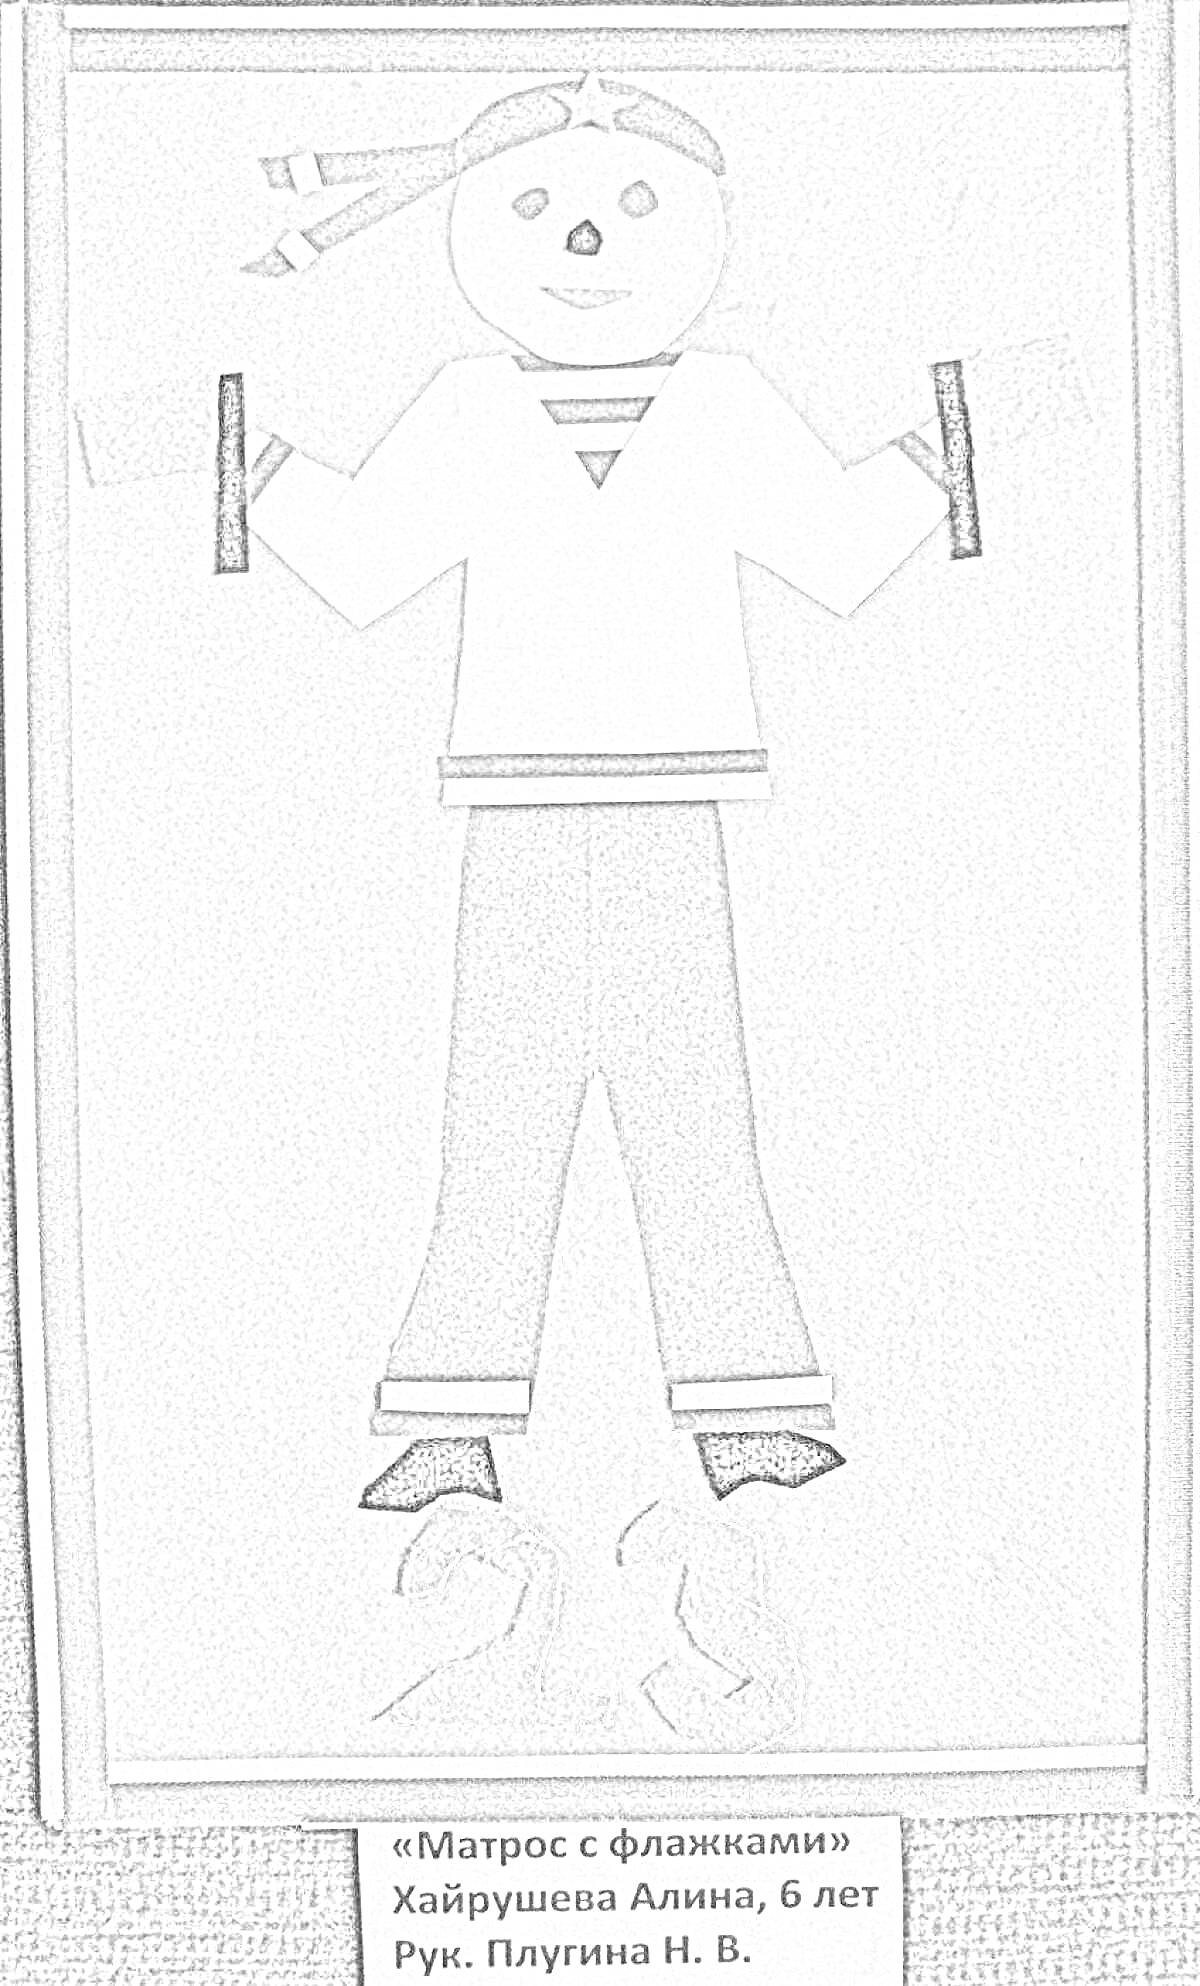 Раскраска Матрос с сигнальными флажками, в полосатой рубашке и штанах, держащий два флажка, на фоне с якорями.